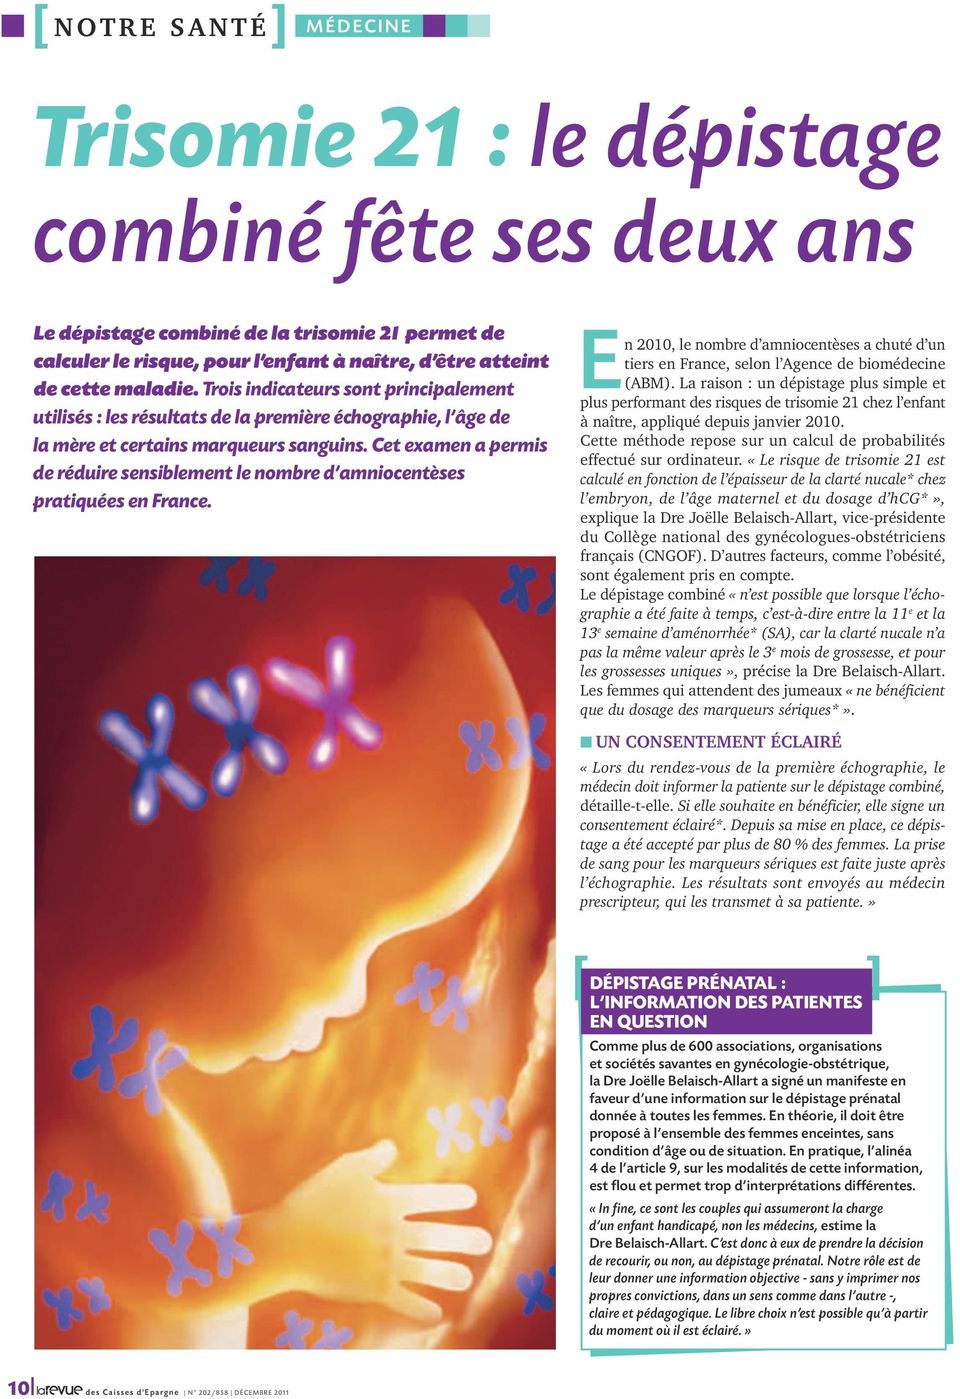 Cet examen a permis de réduire sensiblement le nombre d amniocentèses pratiquées en France. En 2010, le nombre d amniocentèses a chuté d un tiers en France, selon l Agence de biomédecine (ABM).